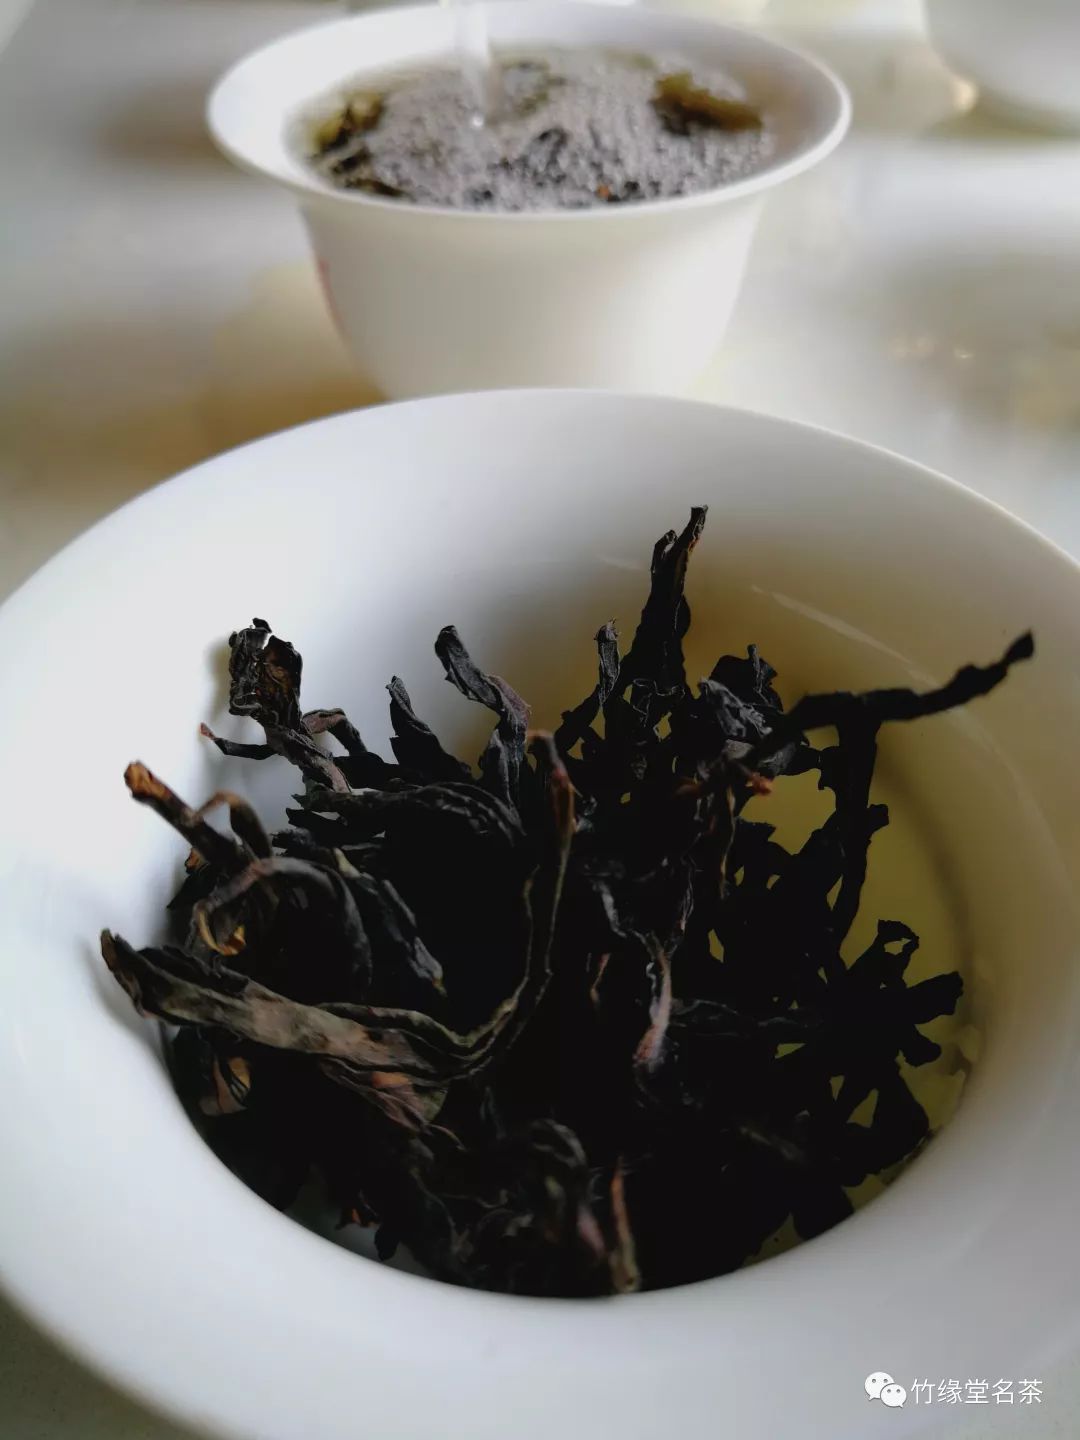 什么是武夷岩茶的毛茶、精茶、炭焙茶